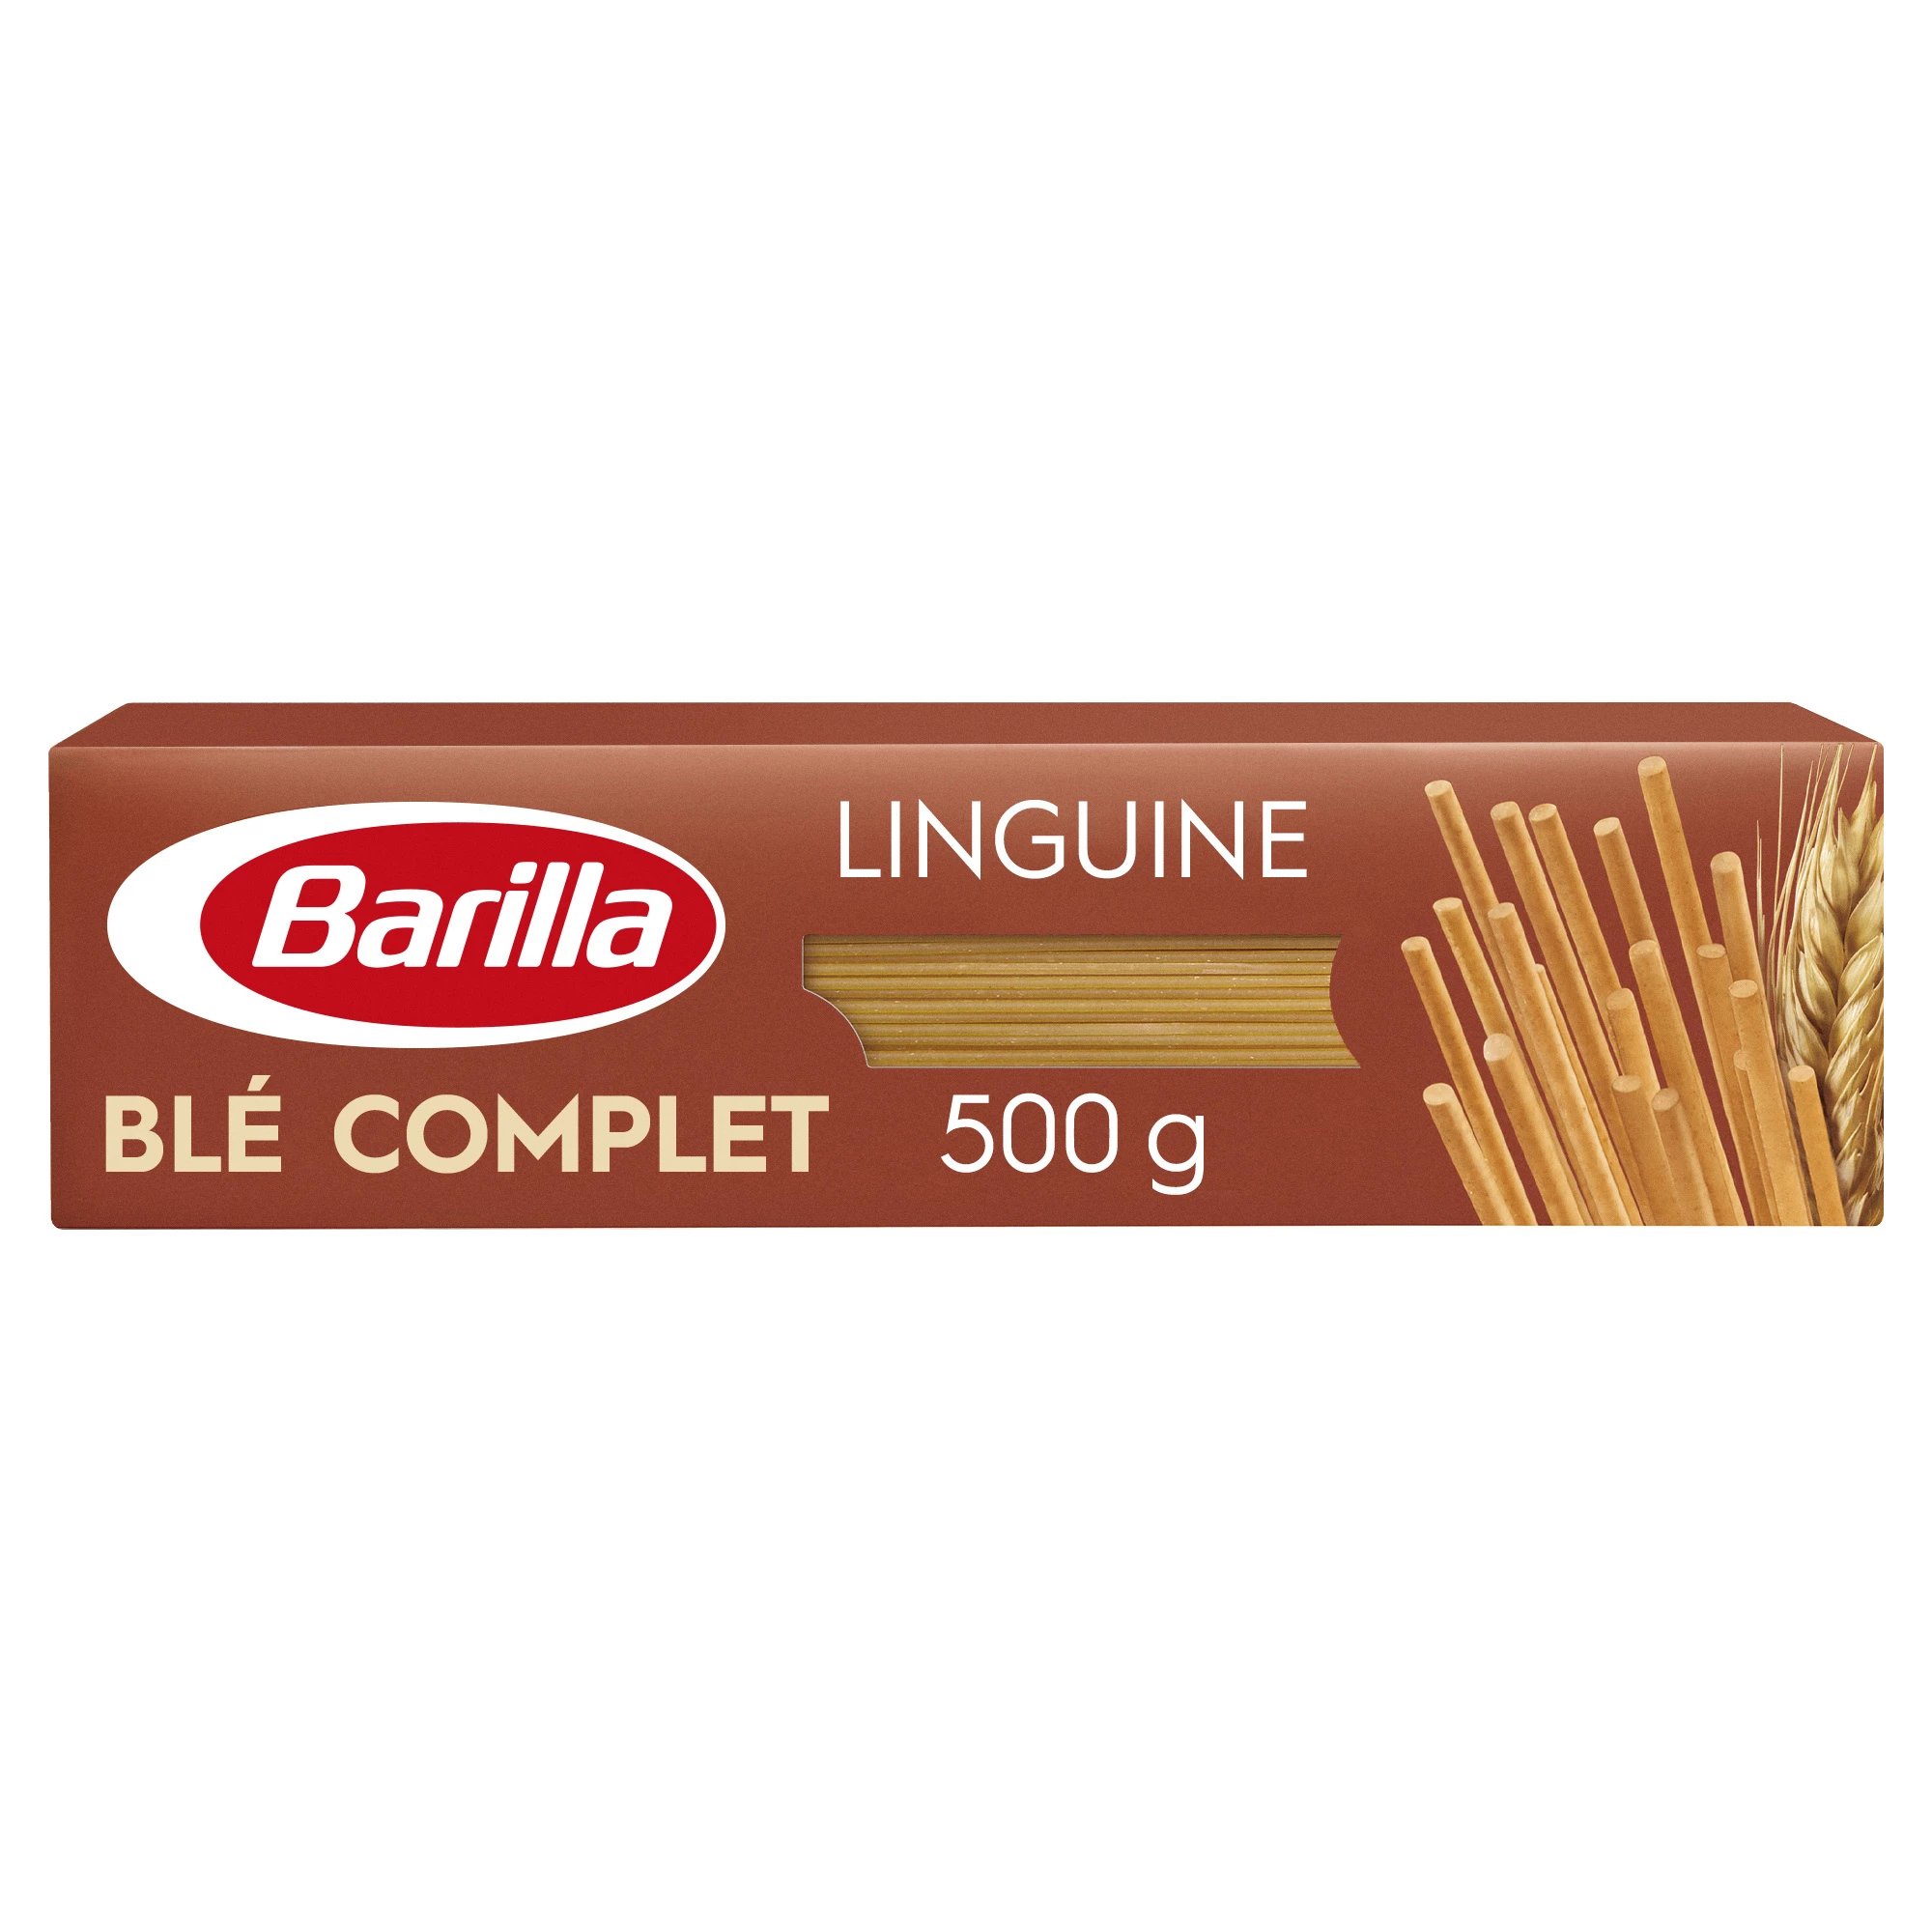 Whole Wheat Linguine Pasta, 500g -  BARILLA